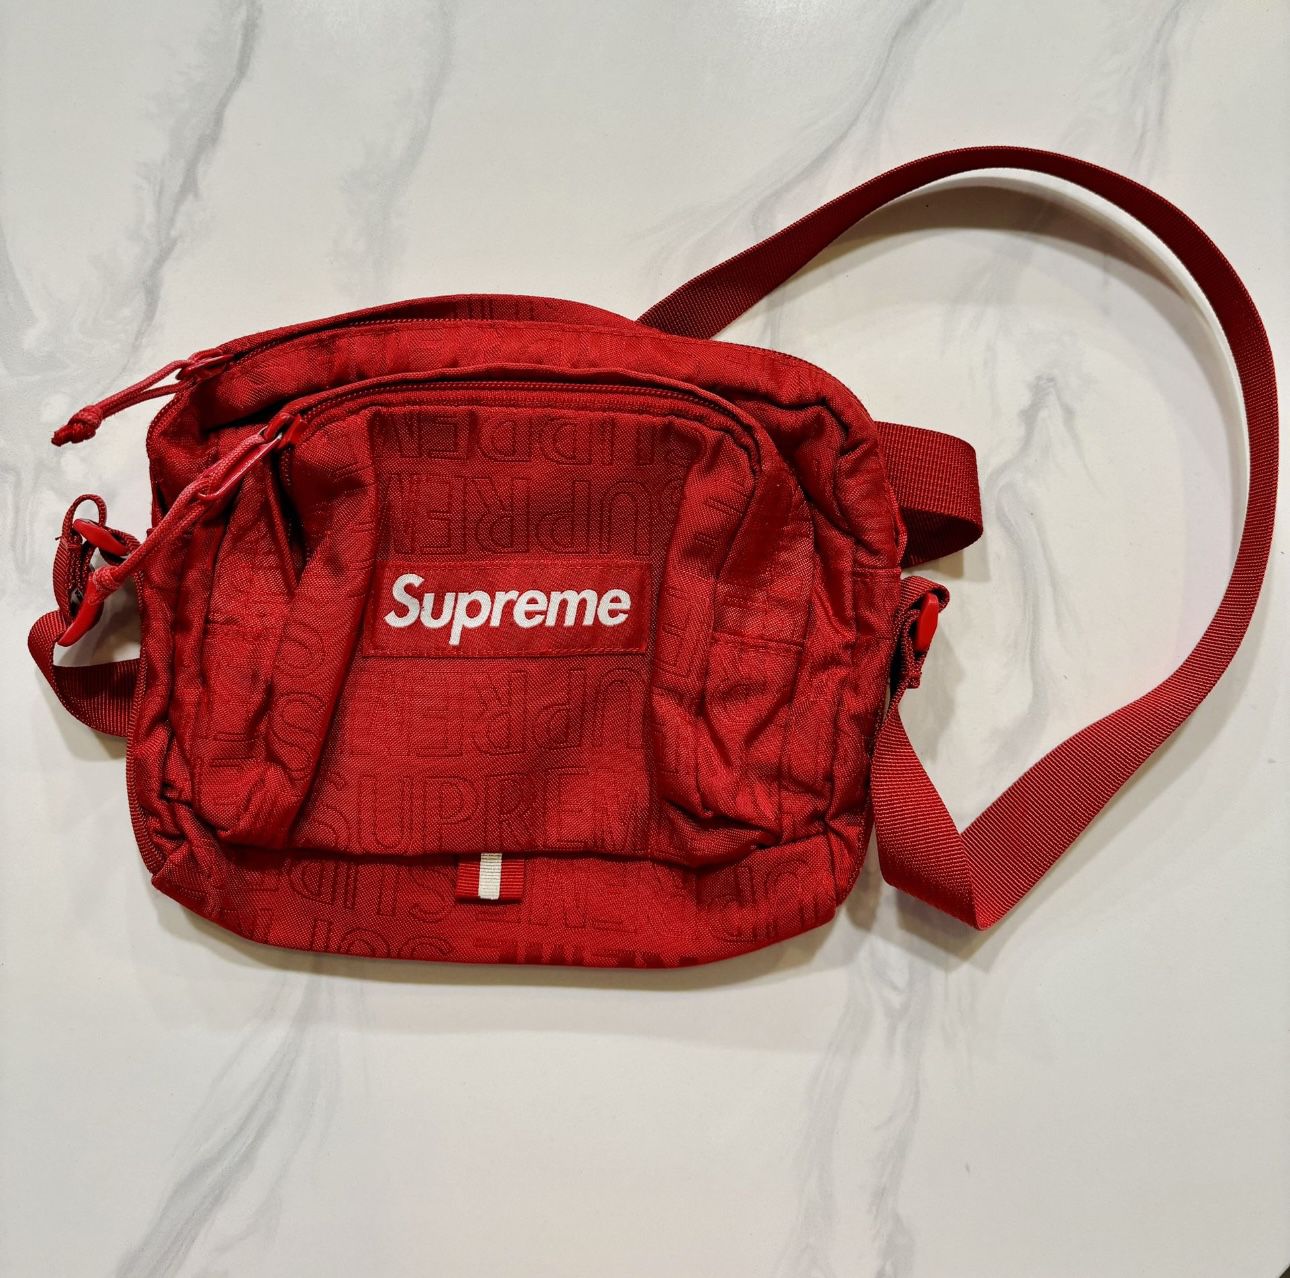 Supreme Shoulder Bag ‘Red’ ss19